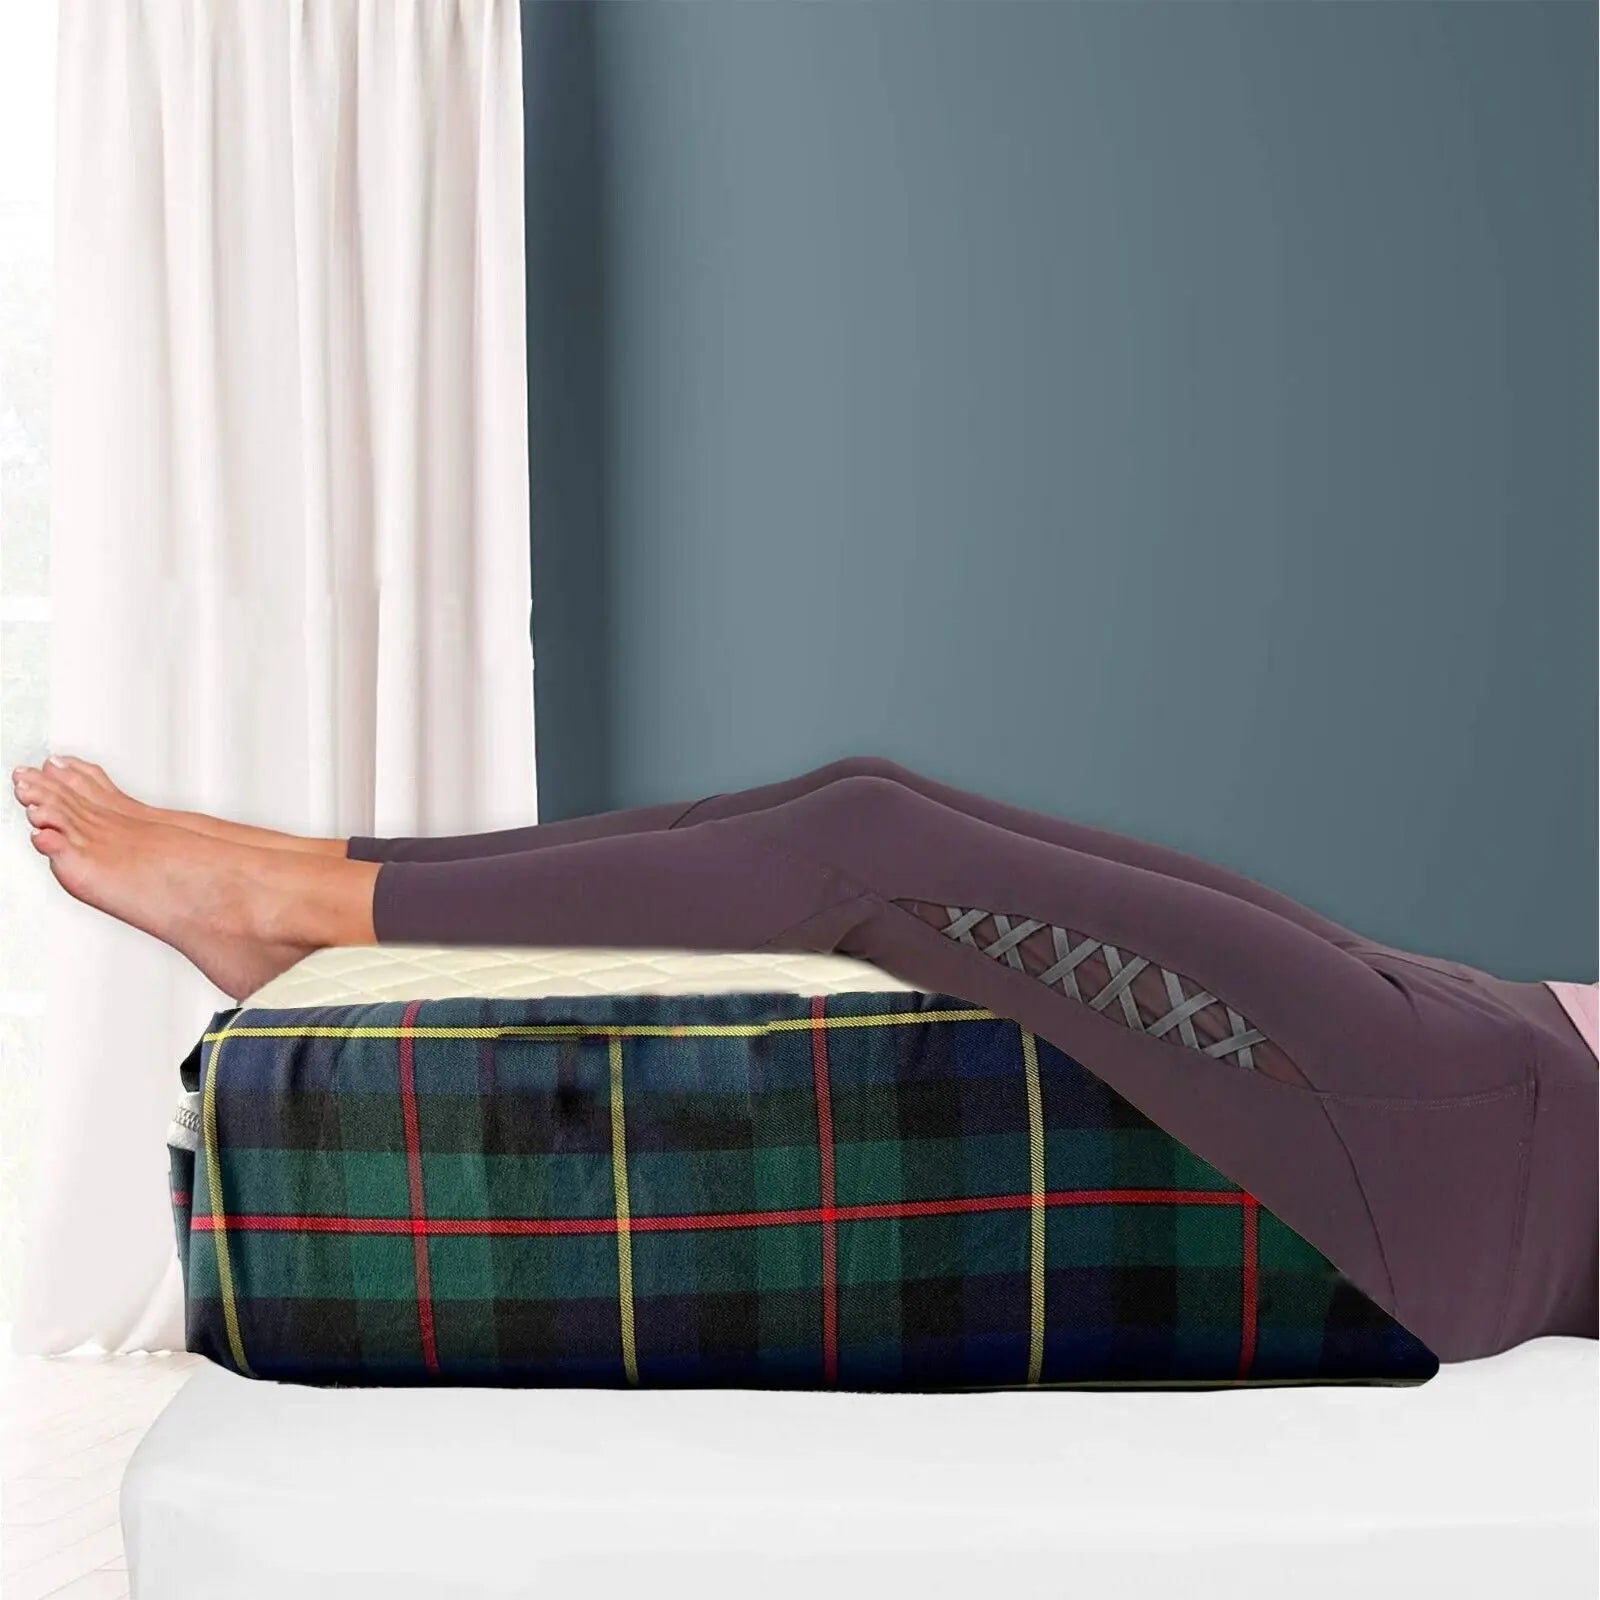 Tartan Designs Leg Pillow Elevating Wedge Foam Rest Pillow Back Hip Knee Support - Beach Stone